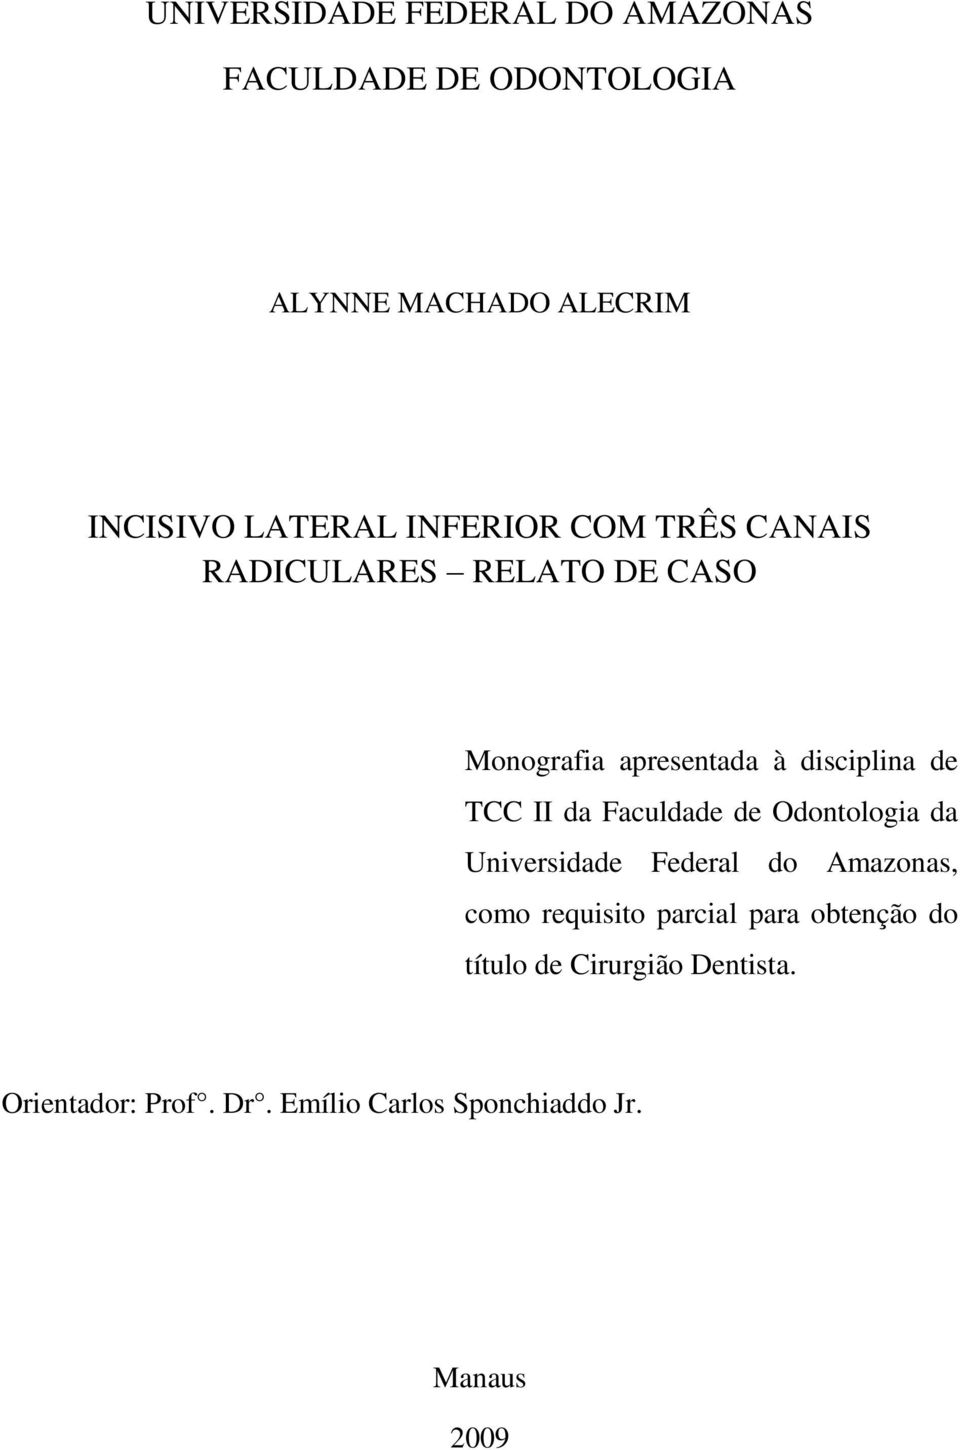 TCC II da Faculdade de Odontologia da Universidade Federal do Amazonas, como requisito parcial